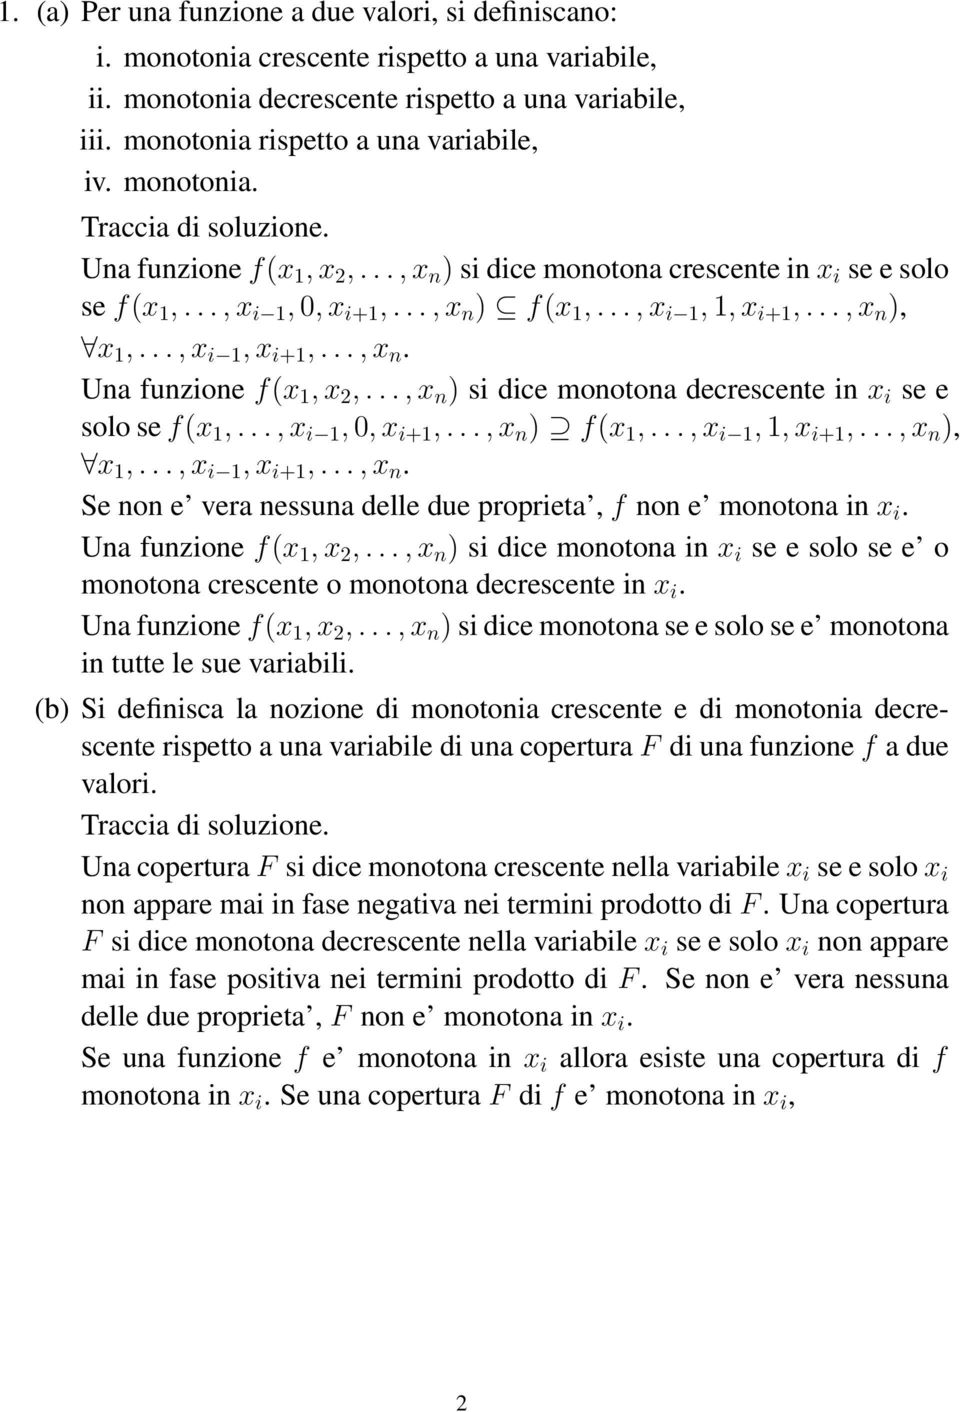 .., x i 1, 0, x i+1,..., x n ) f(x 1,..., x i 1, 1, x i+1,..., x n ), x 1,..., x i 1, x i+1,..., x n. Se non e vera nessuna delle due proprieta, f non e monotona in x i. Una funzione f(x 1, x 2,.